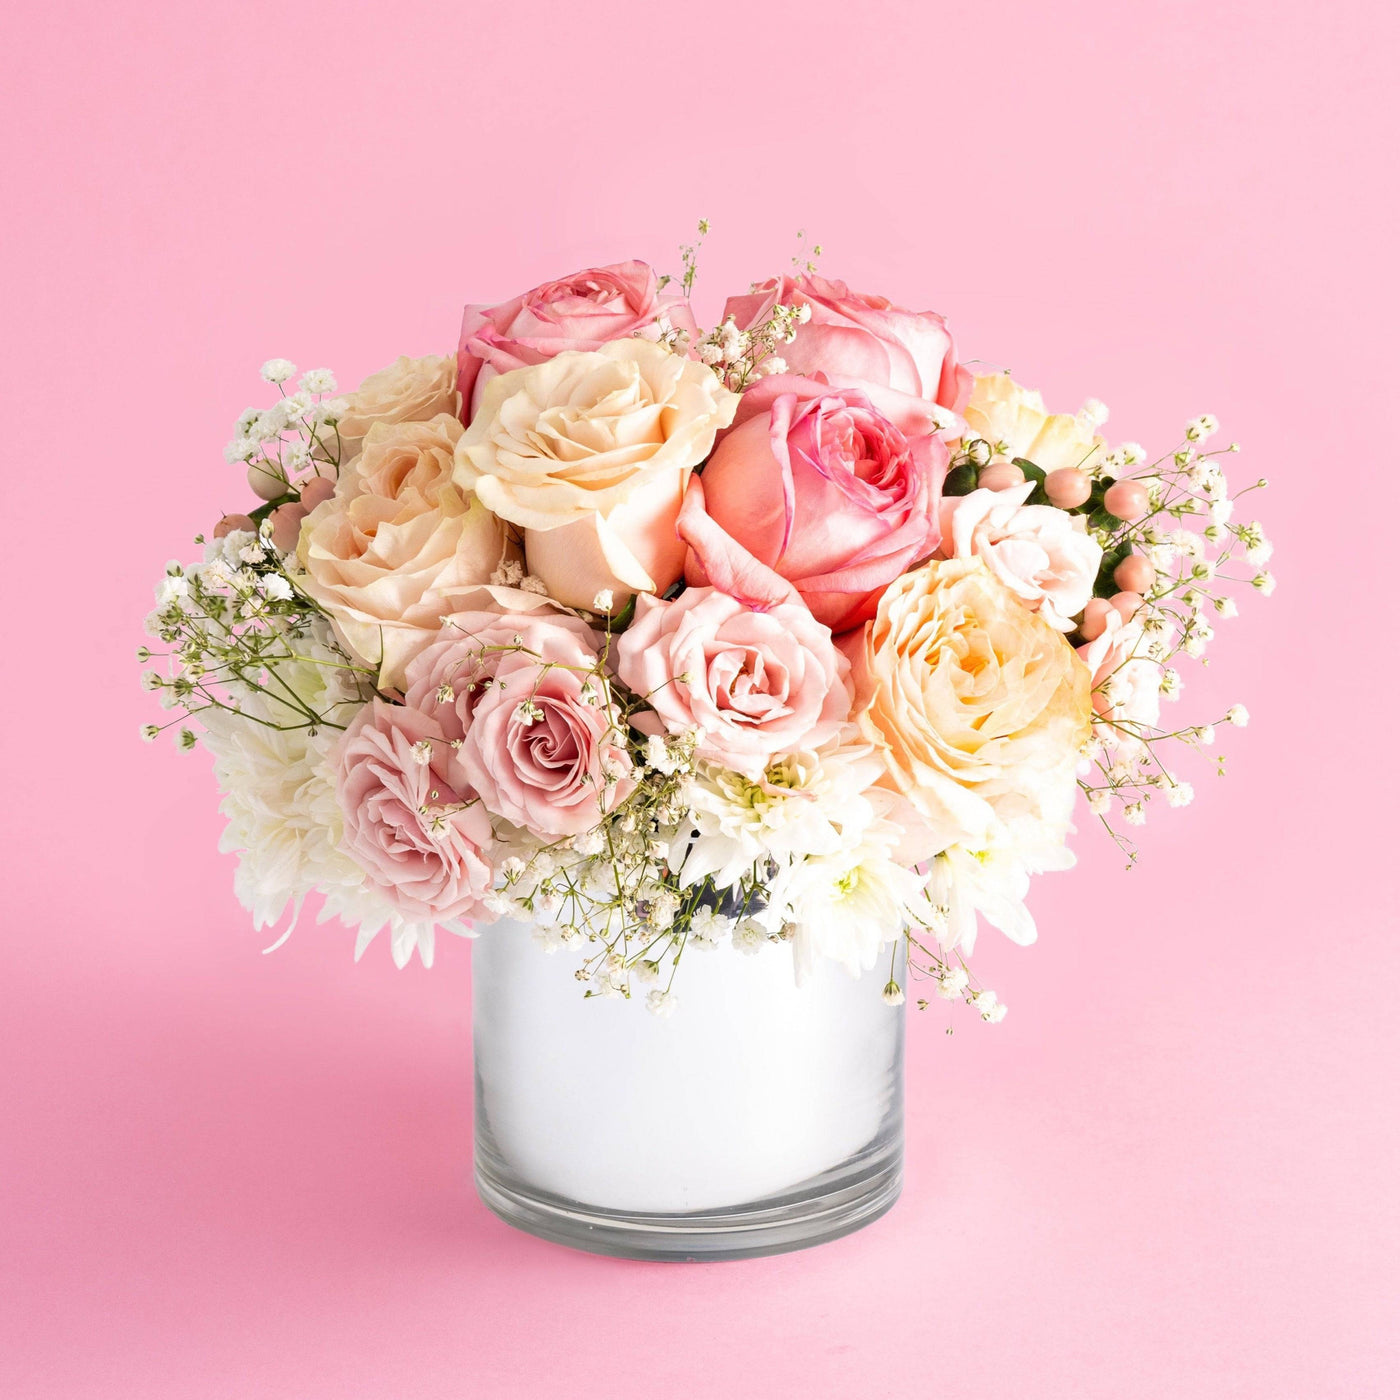 Sweet Pink Rose Bouquet - Sweet E's Bake Shop